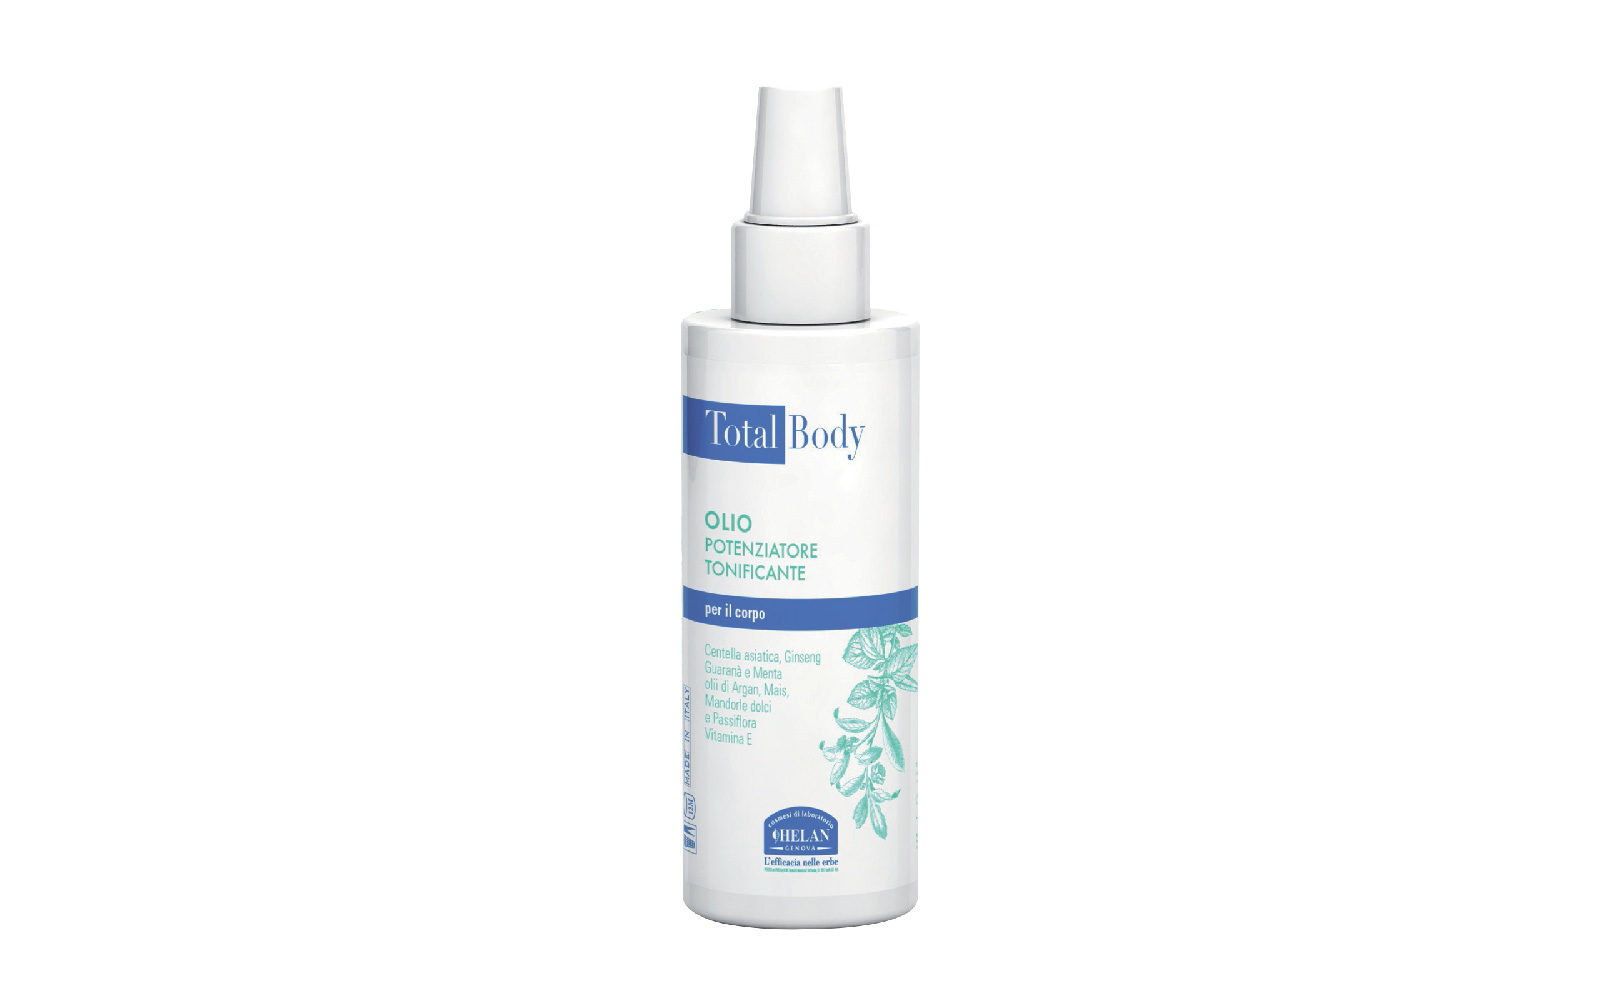 Total Body Olio Potenziatore Tonificante di Helan stimola la riparazione dei tessuti e ne ottimizza tonicità ed elasticità (erboristeria,  22 euro).